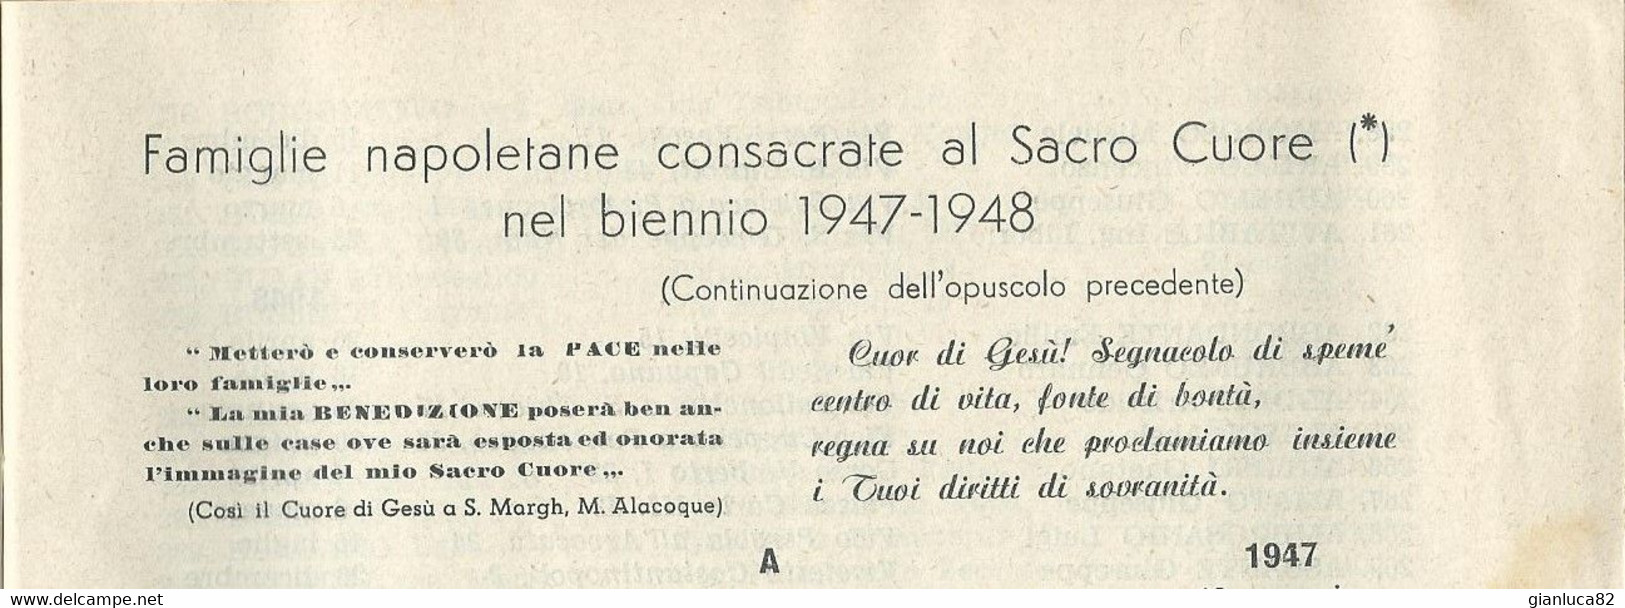 Libretto Famiglie Napoletane Consacrate S. Cuore 1947-1948 Rarità (827)